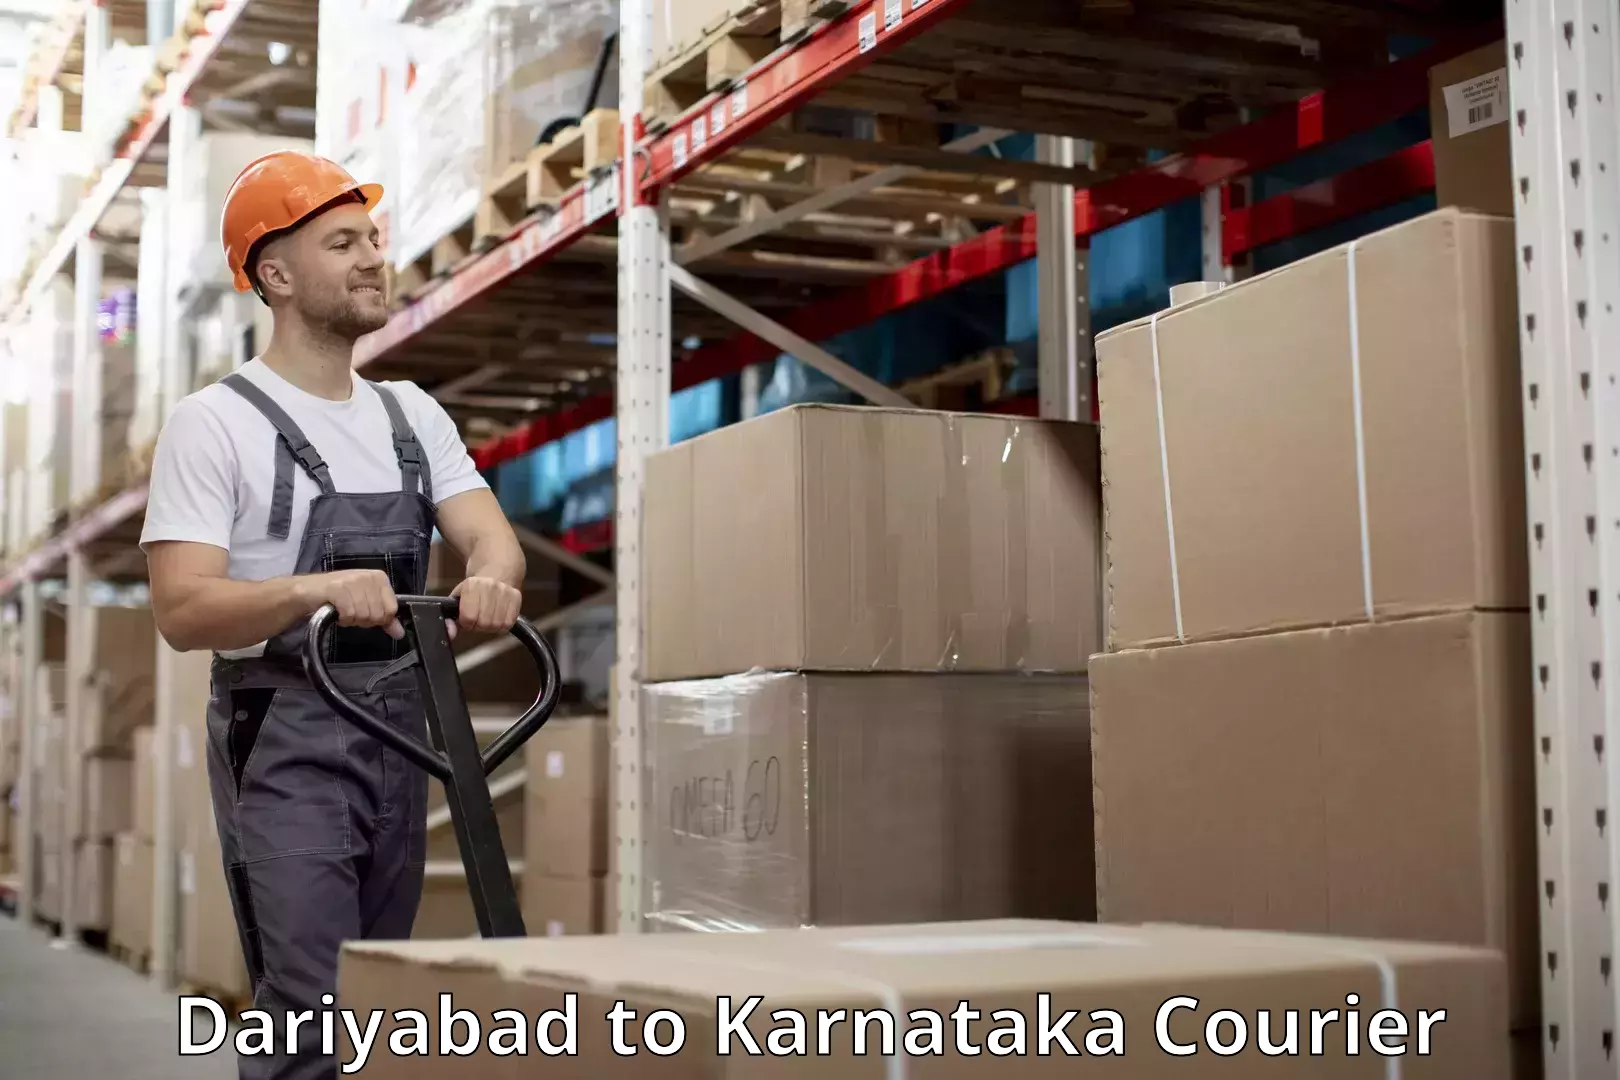 Baggage transport management Dariyabad to Karnataka